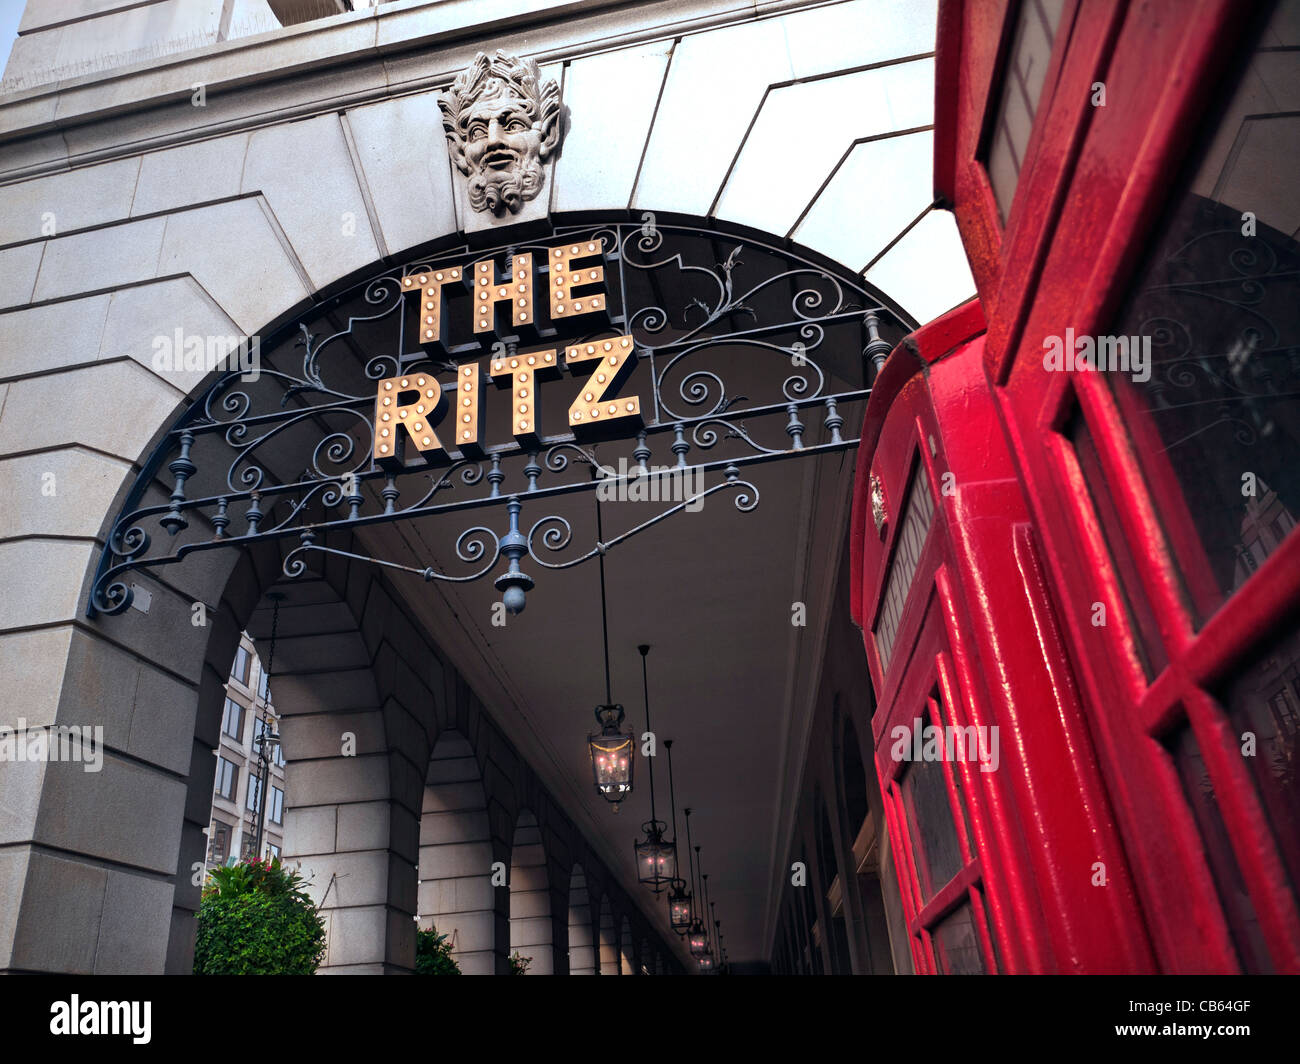 El Hotel Ritz de Londres en un hotel de lujo de 5 estrellas situado en Piccadilly, con cabinas de teléfono rojo tradicional conservado en primer plano, Londres, Gran Bretaña. Foto de stock